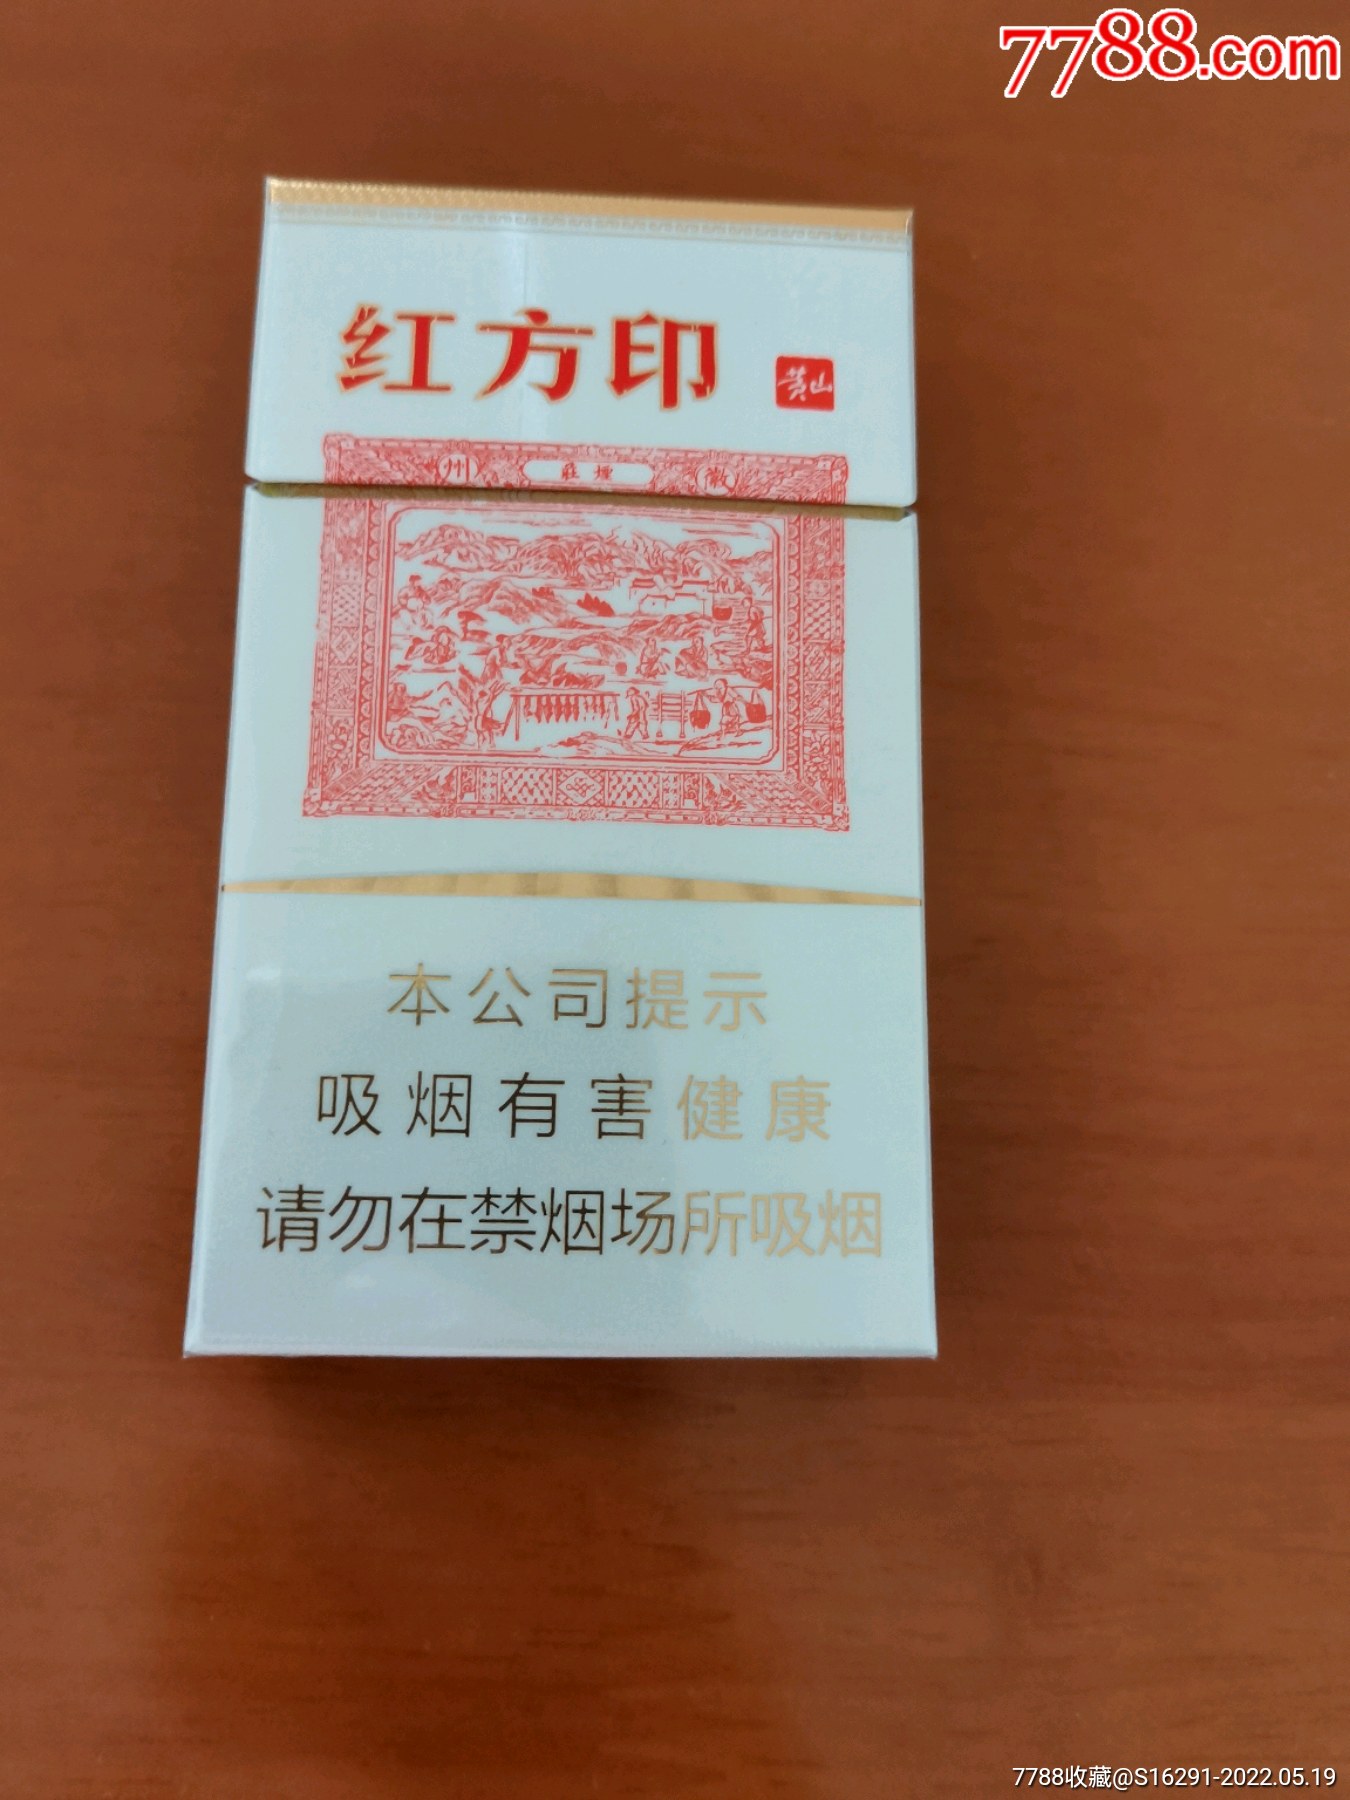 红方印-价格:1元-se87181050-烟标/烟盒-零售-7788收藏__收藏热线